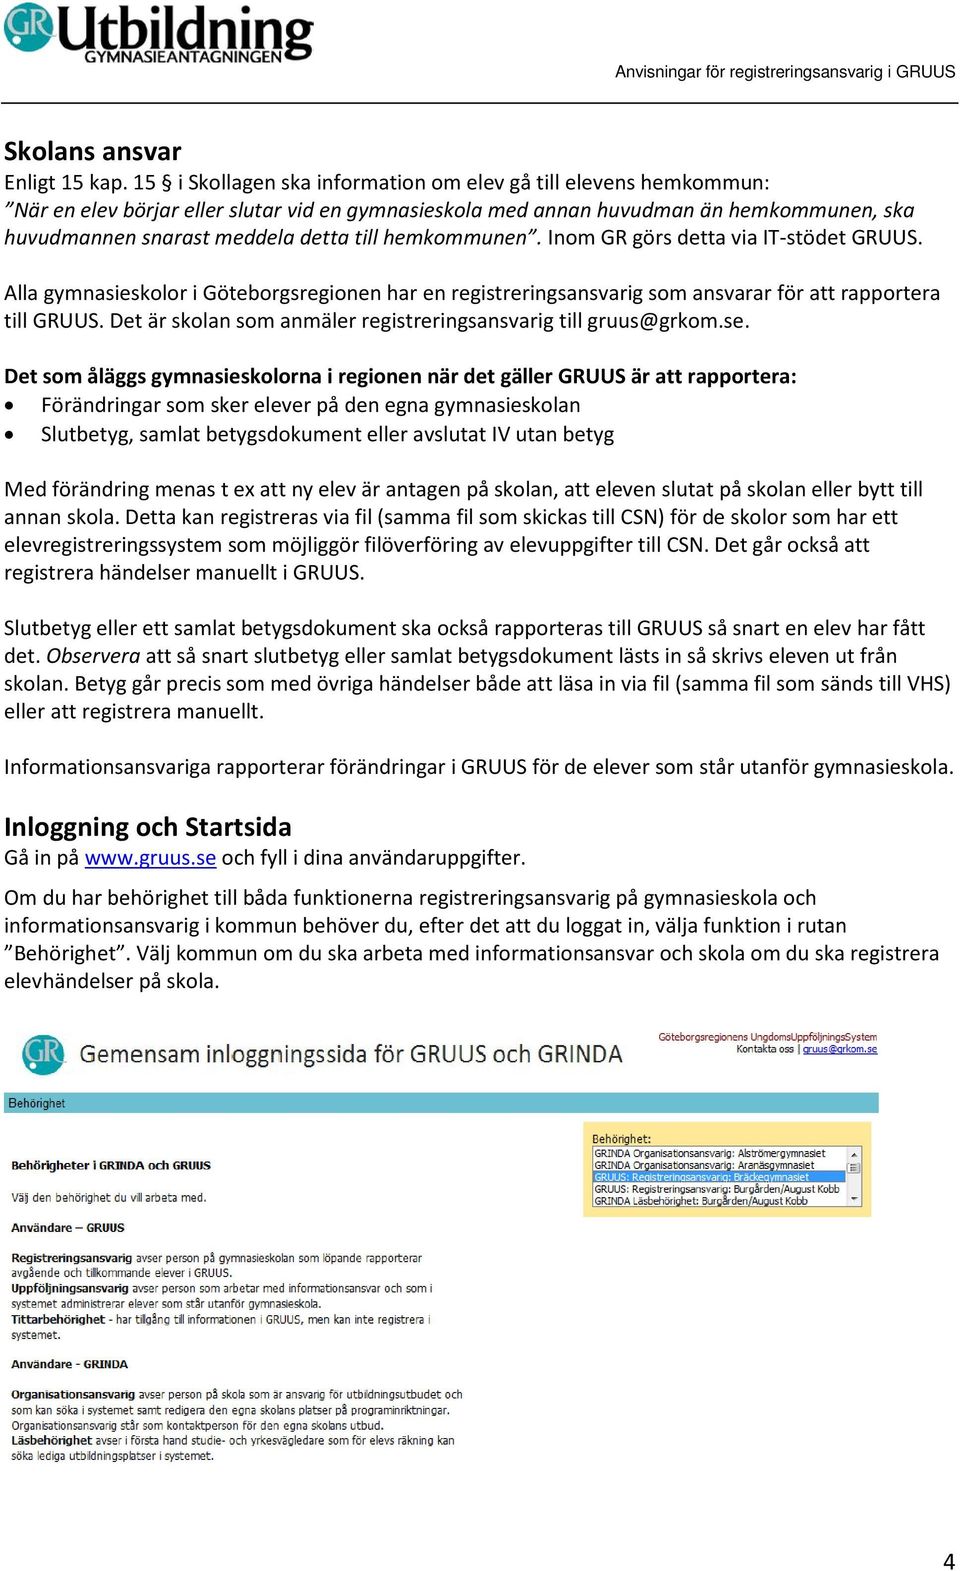 hemkommunen. Inom GR görs detta via IT-stödet GRUUS. Alla gymnasieskolor i Göteborgsregionen har en registreringsansvarig som ansvarar för att rapportera till GRUUS.